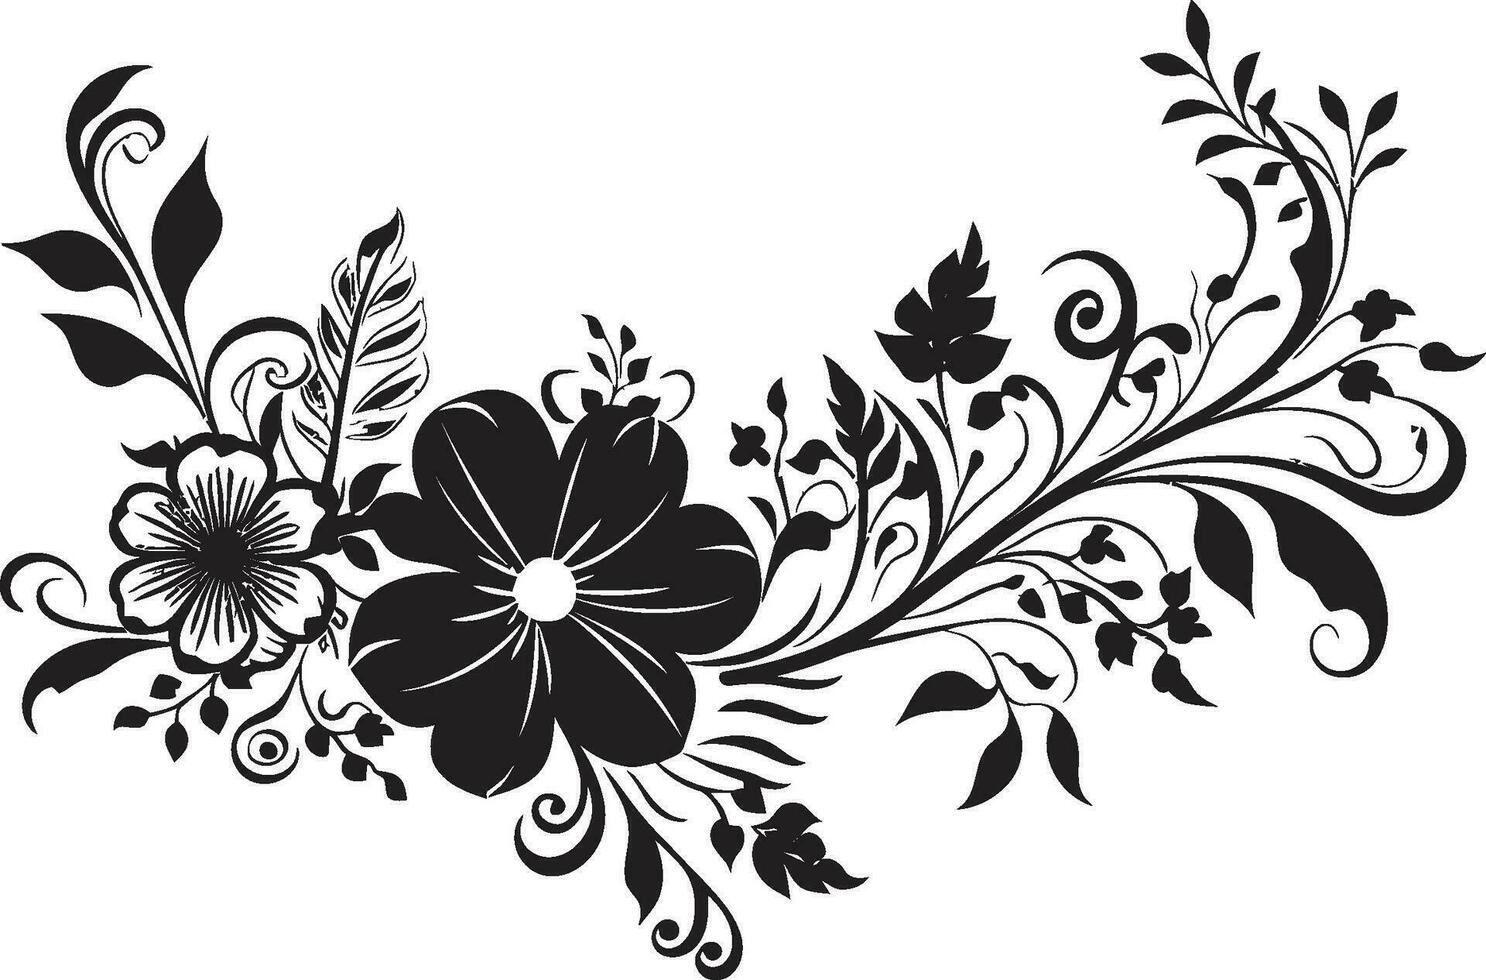 caprichoso flora hecho a mano vector diseño garabatear flores negro floral logo icono